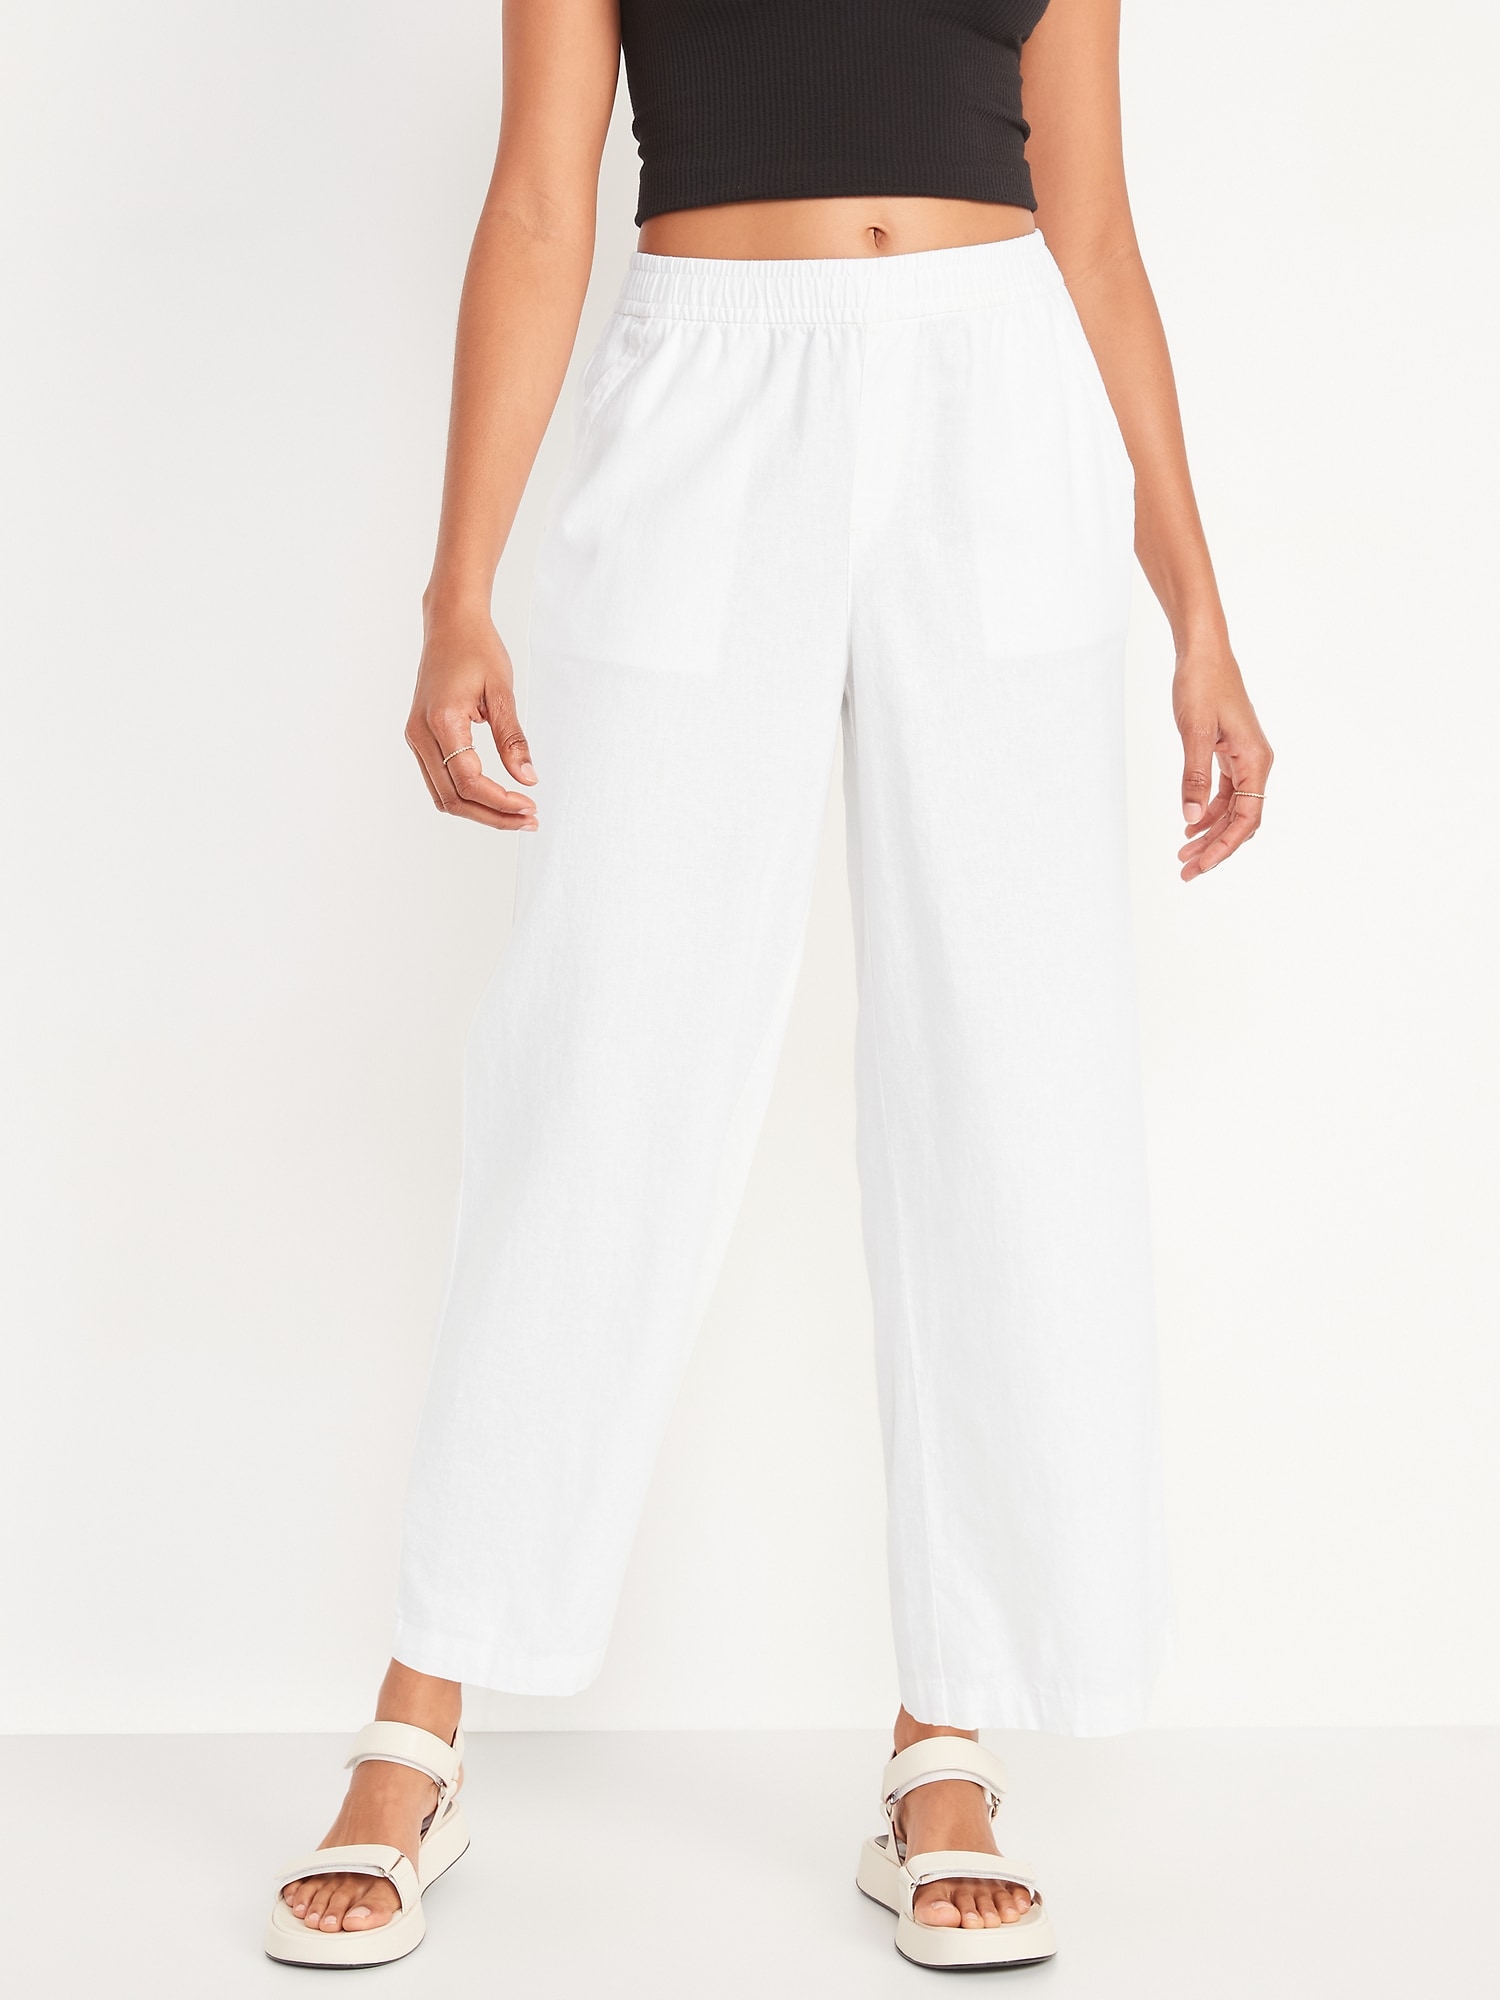  White Linen Pants Women